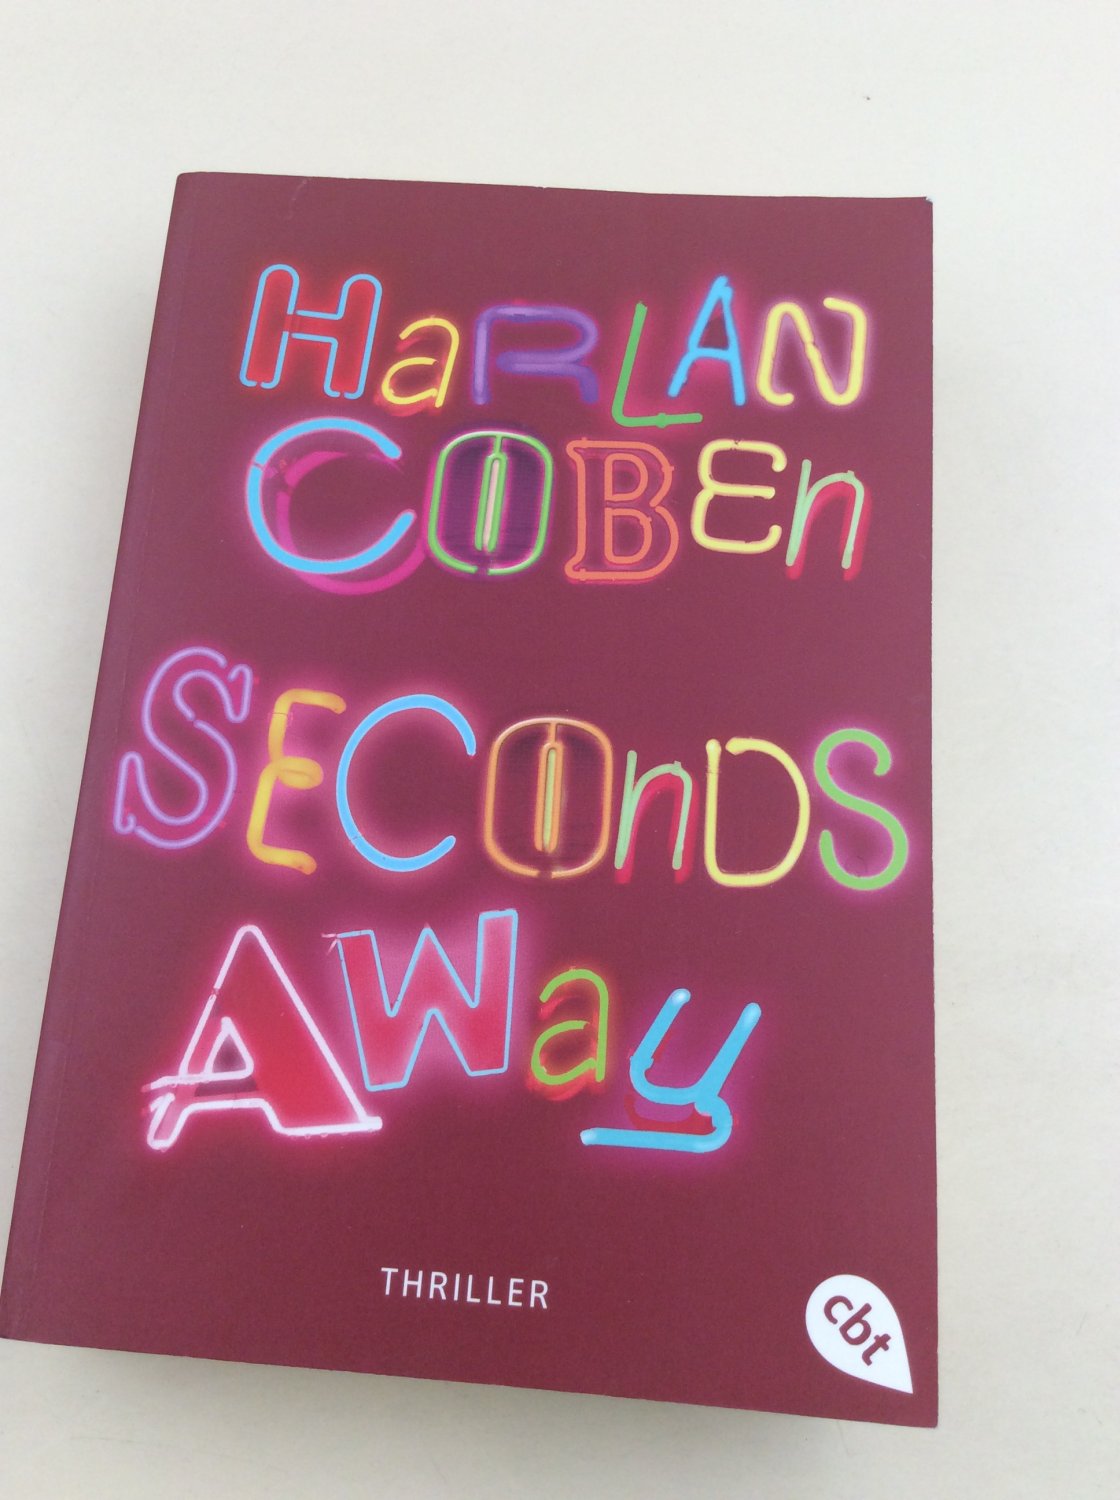 Seconds away: Thriller - Coben, Harlan